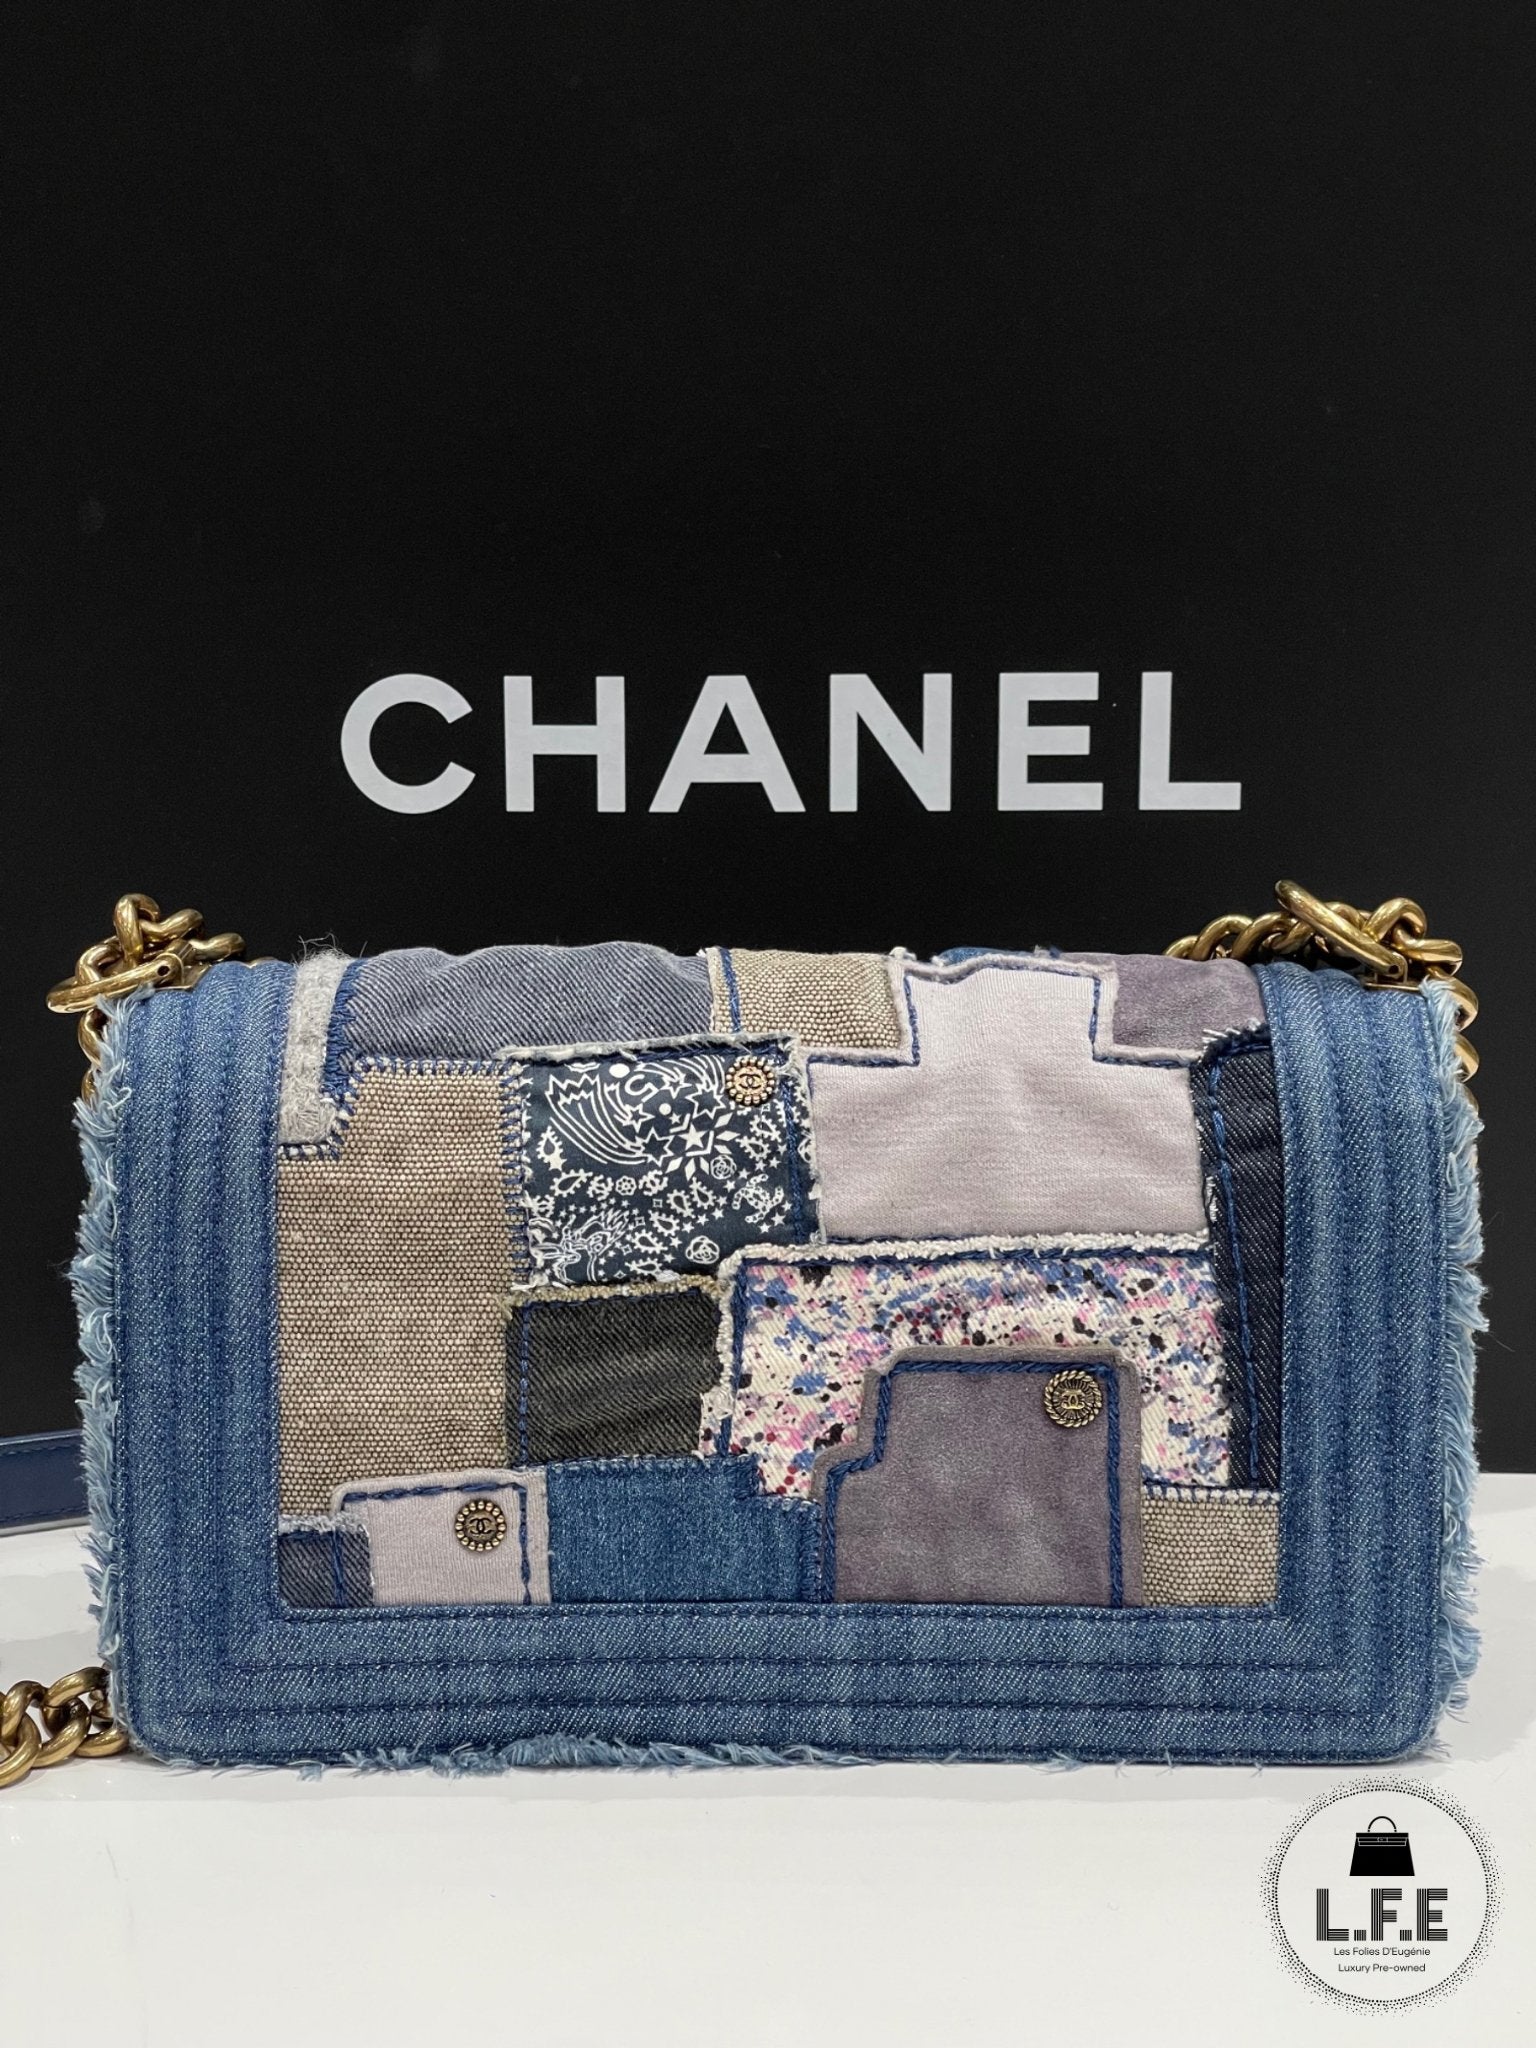 Chanel - Sac Boy medium denim patchwork 